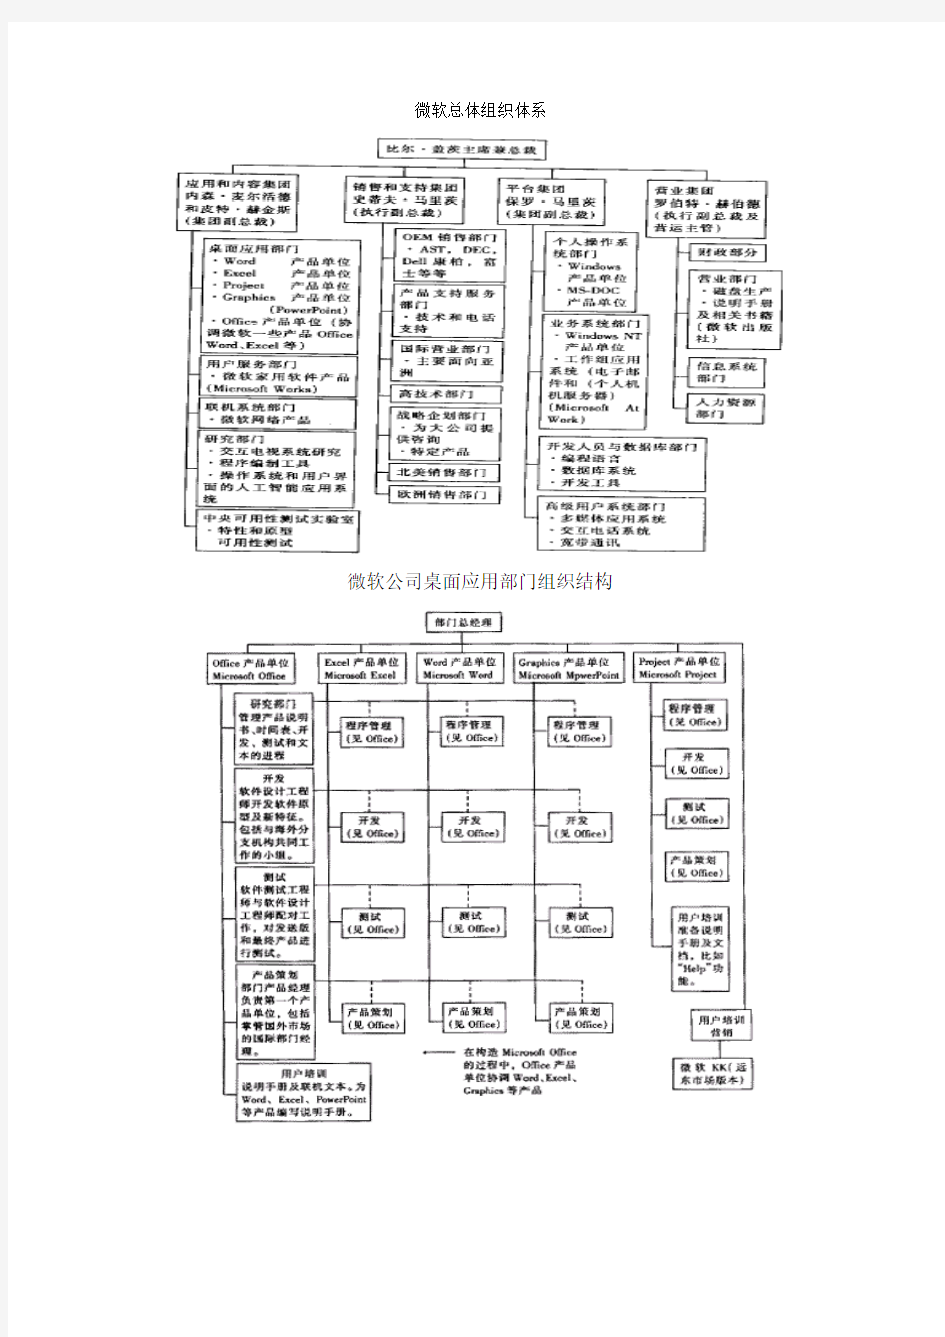 著名IT公司组织结构图2014